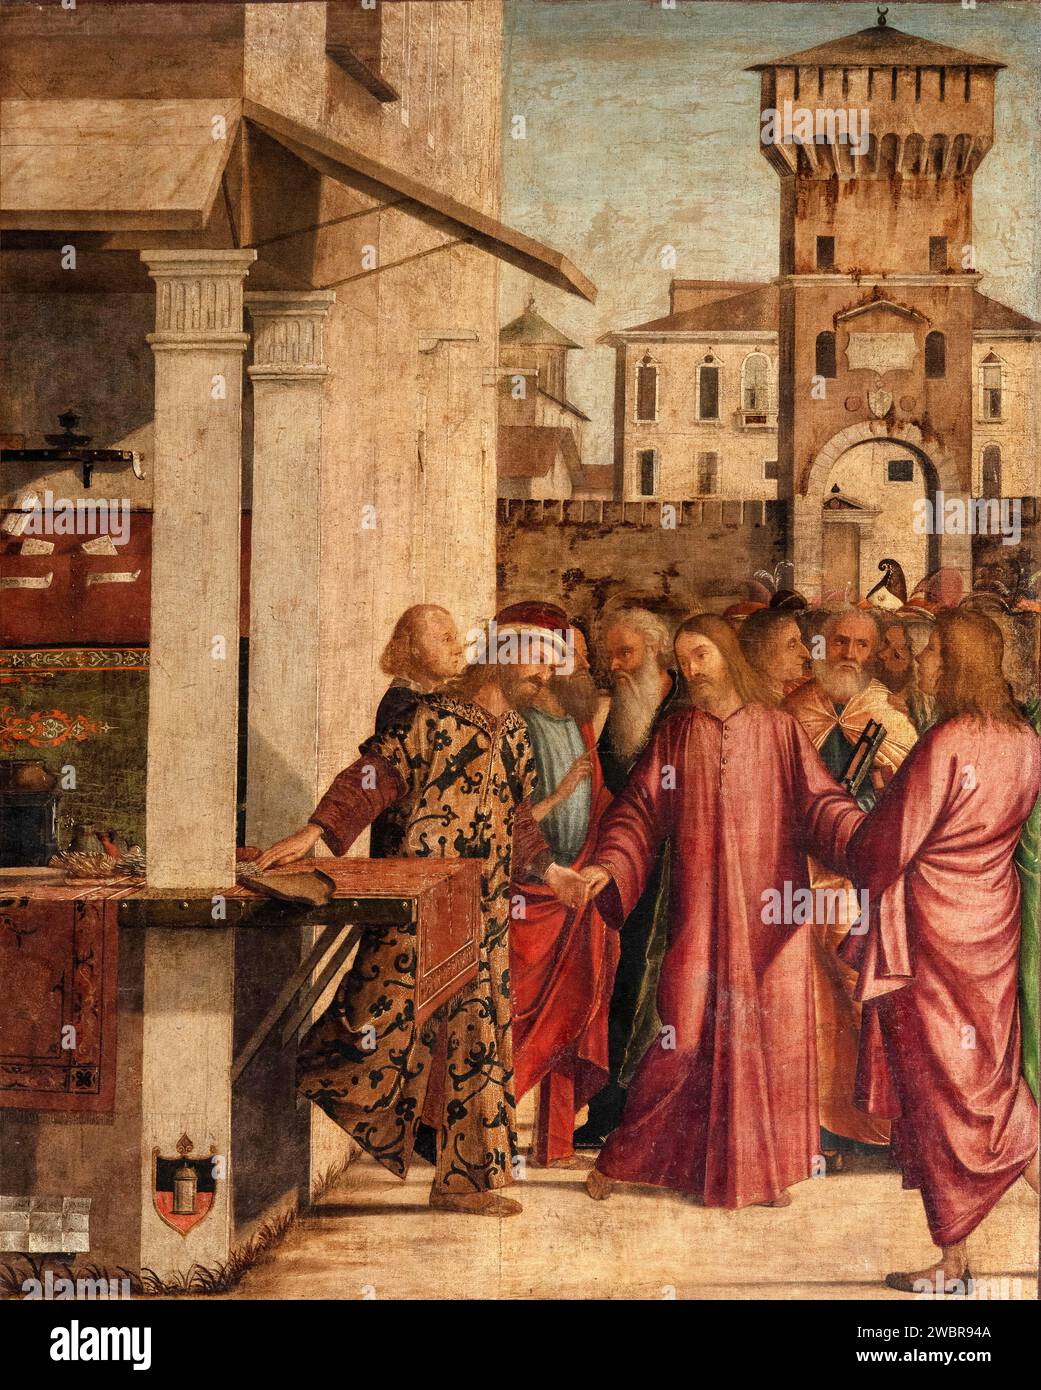 Vocazione di S. Matteo - olio su tela - Vittore Carpaccio - 1502 - Venezia, Scuola Dalmata dei Santi Giorgio e Trifone, detta anche Scuola di S.Gior Banque D'Images